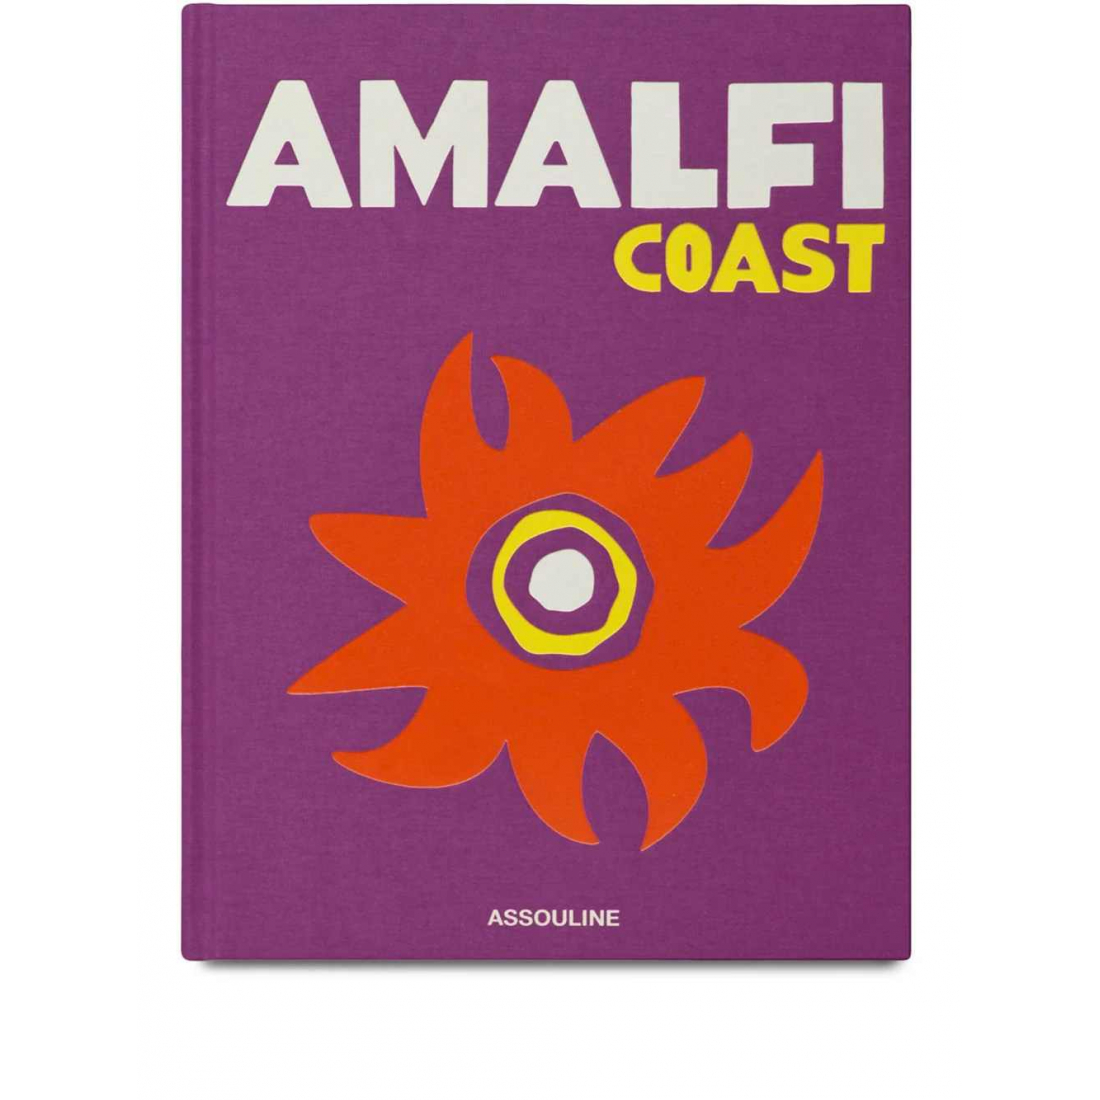 'Amalfi Coast' Book